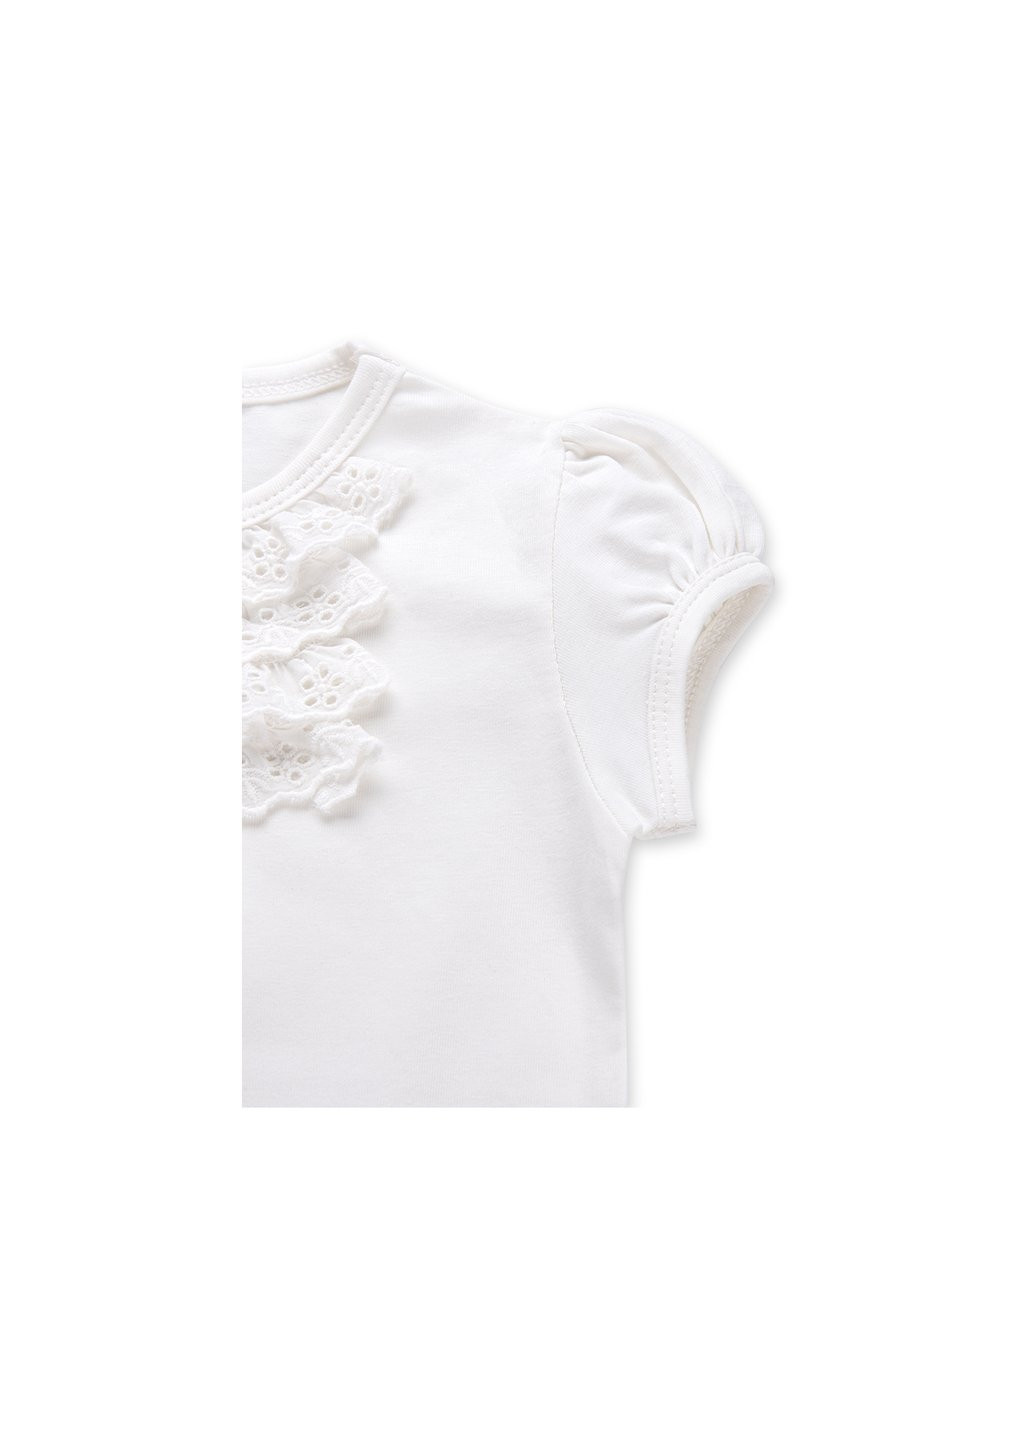 Комбинированная футболка детская с кружевными рюшами (6640-92g-cream) Breeze